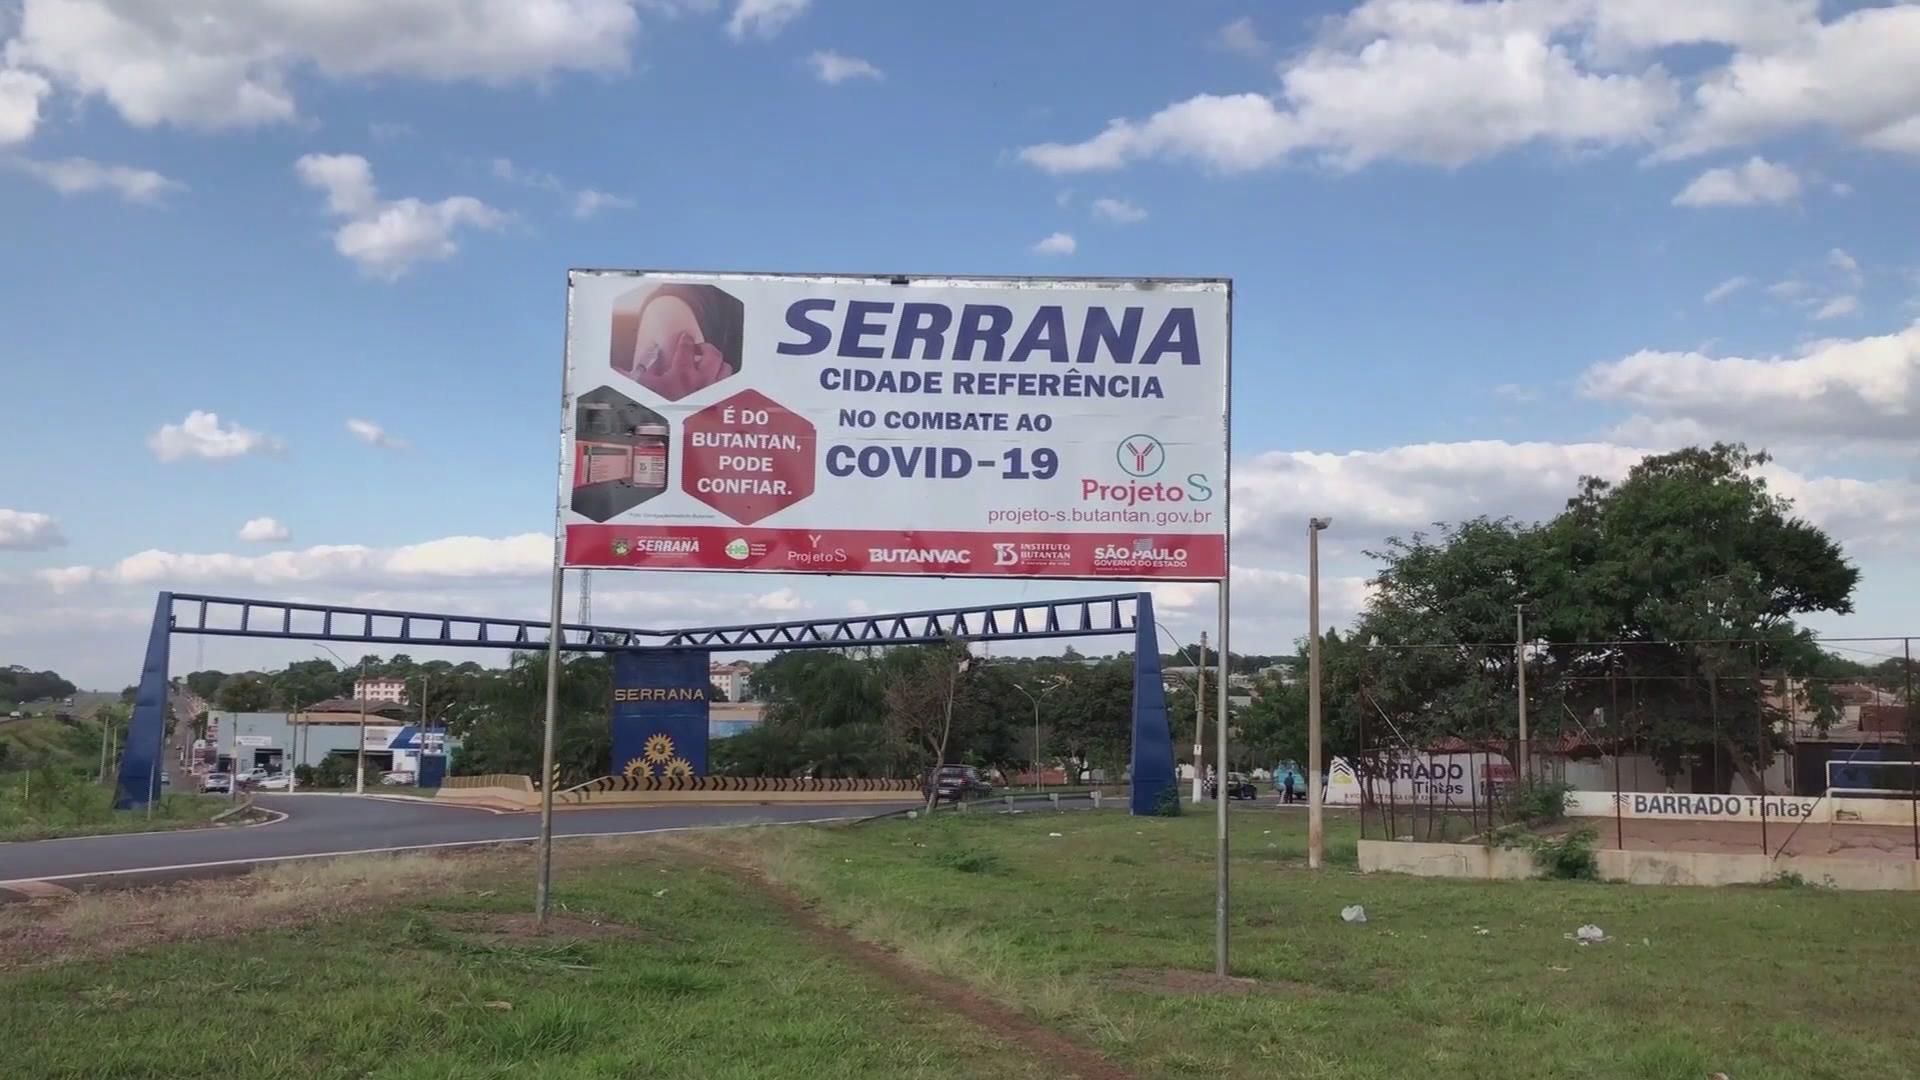 Ciudad brasileña de Serrana, centro de ensayo de inoculación masiva con vacuna china CoronaVac